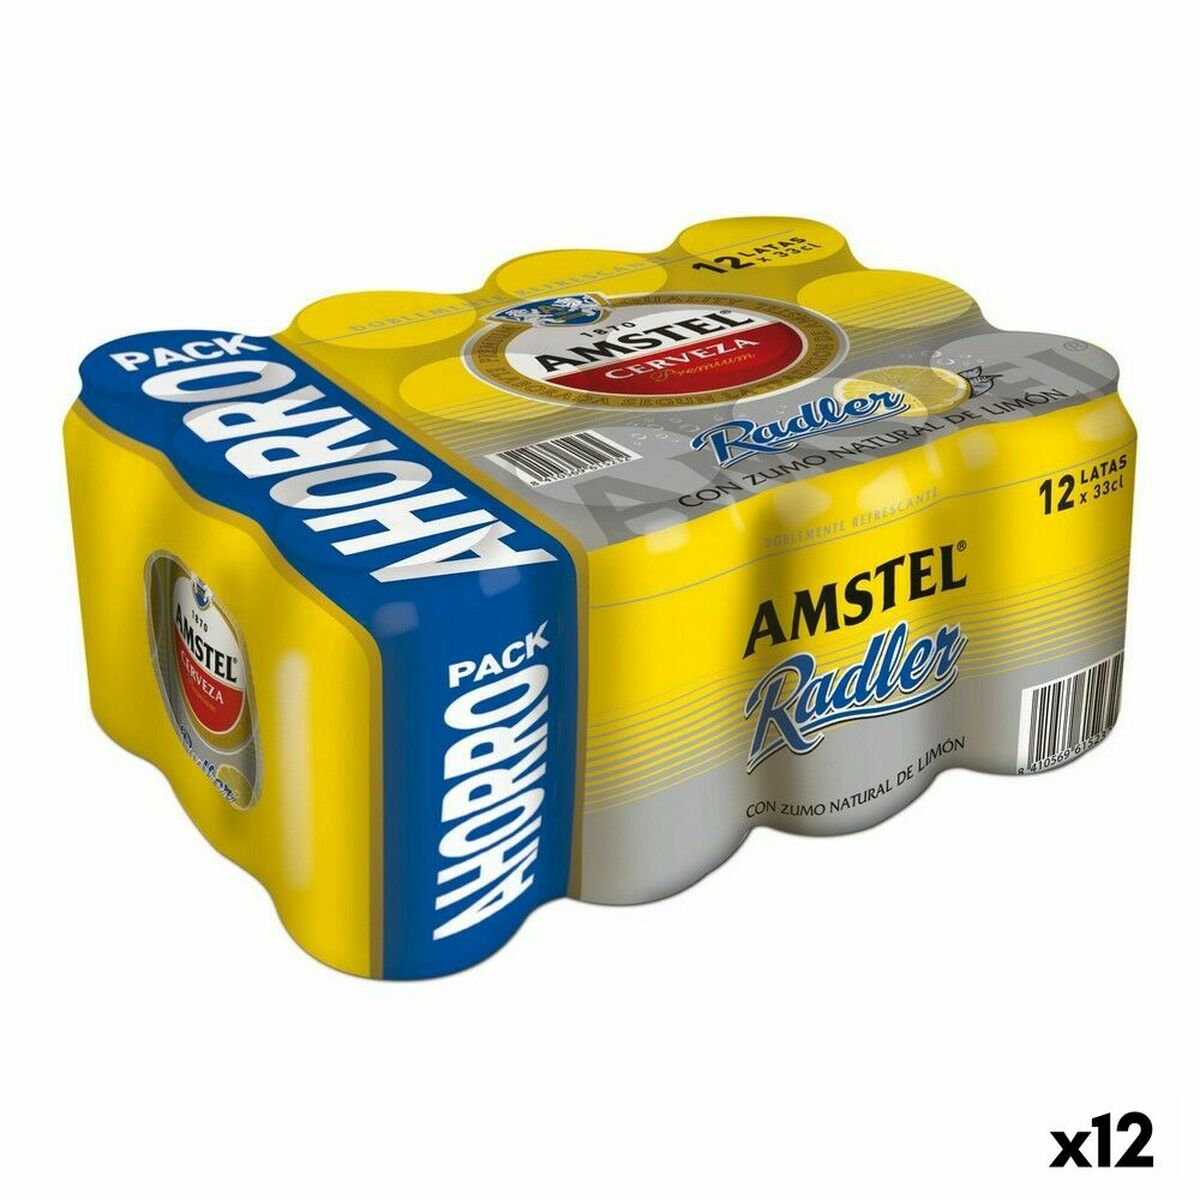 Bere Amstel Radler (Pack 12 uds)